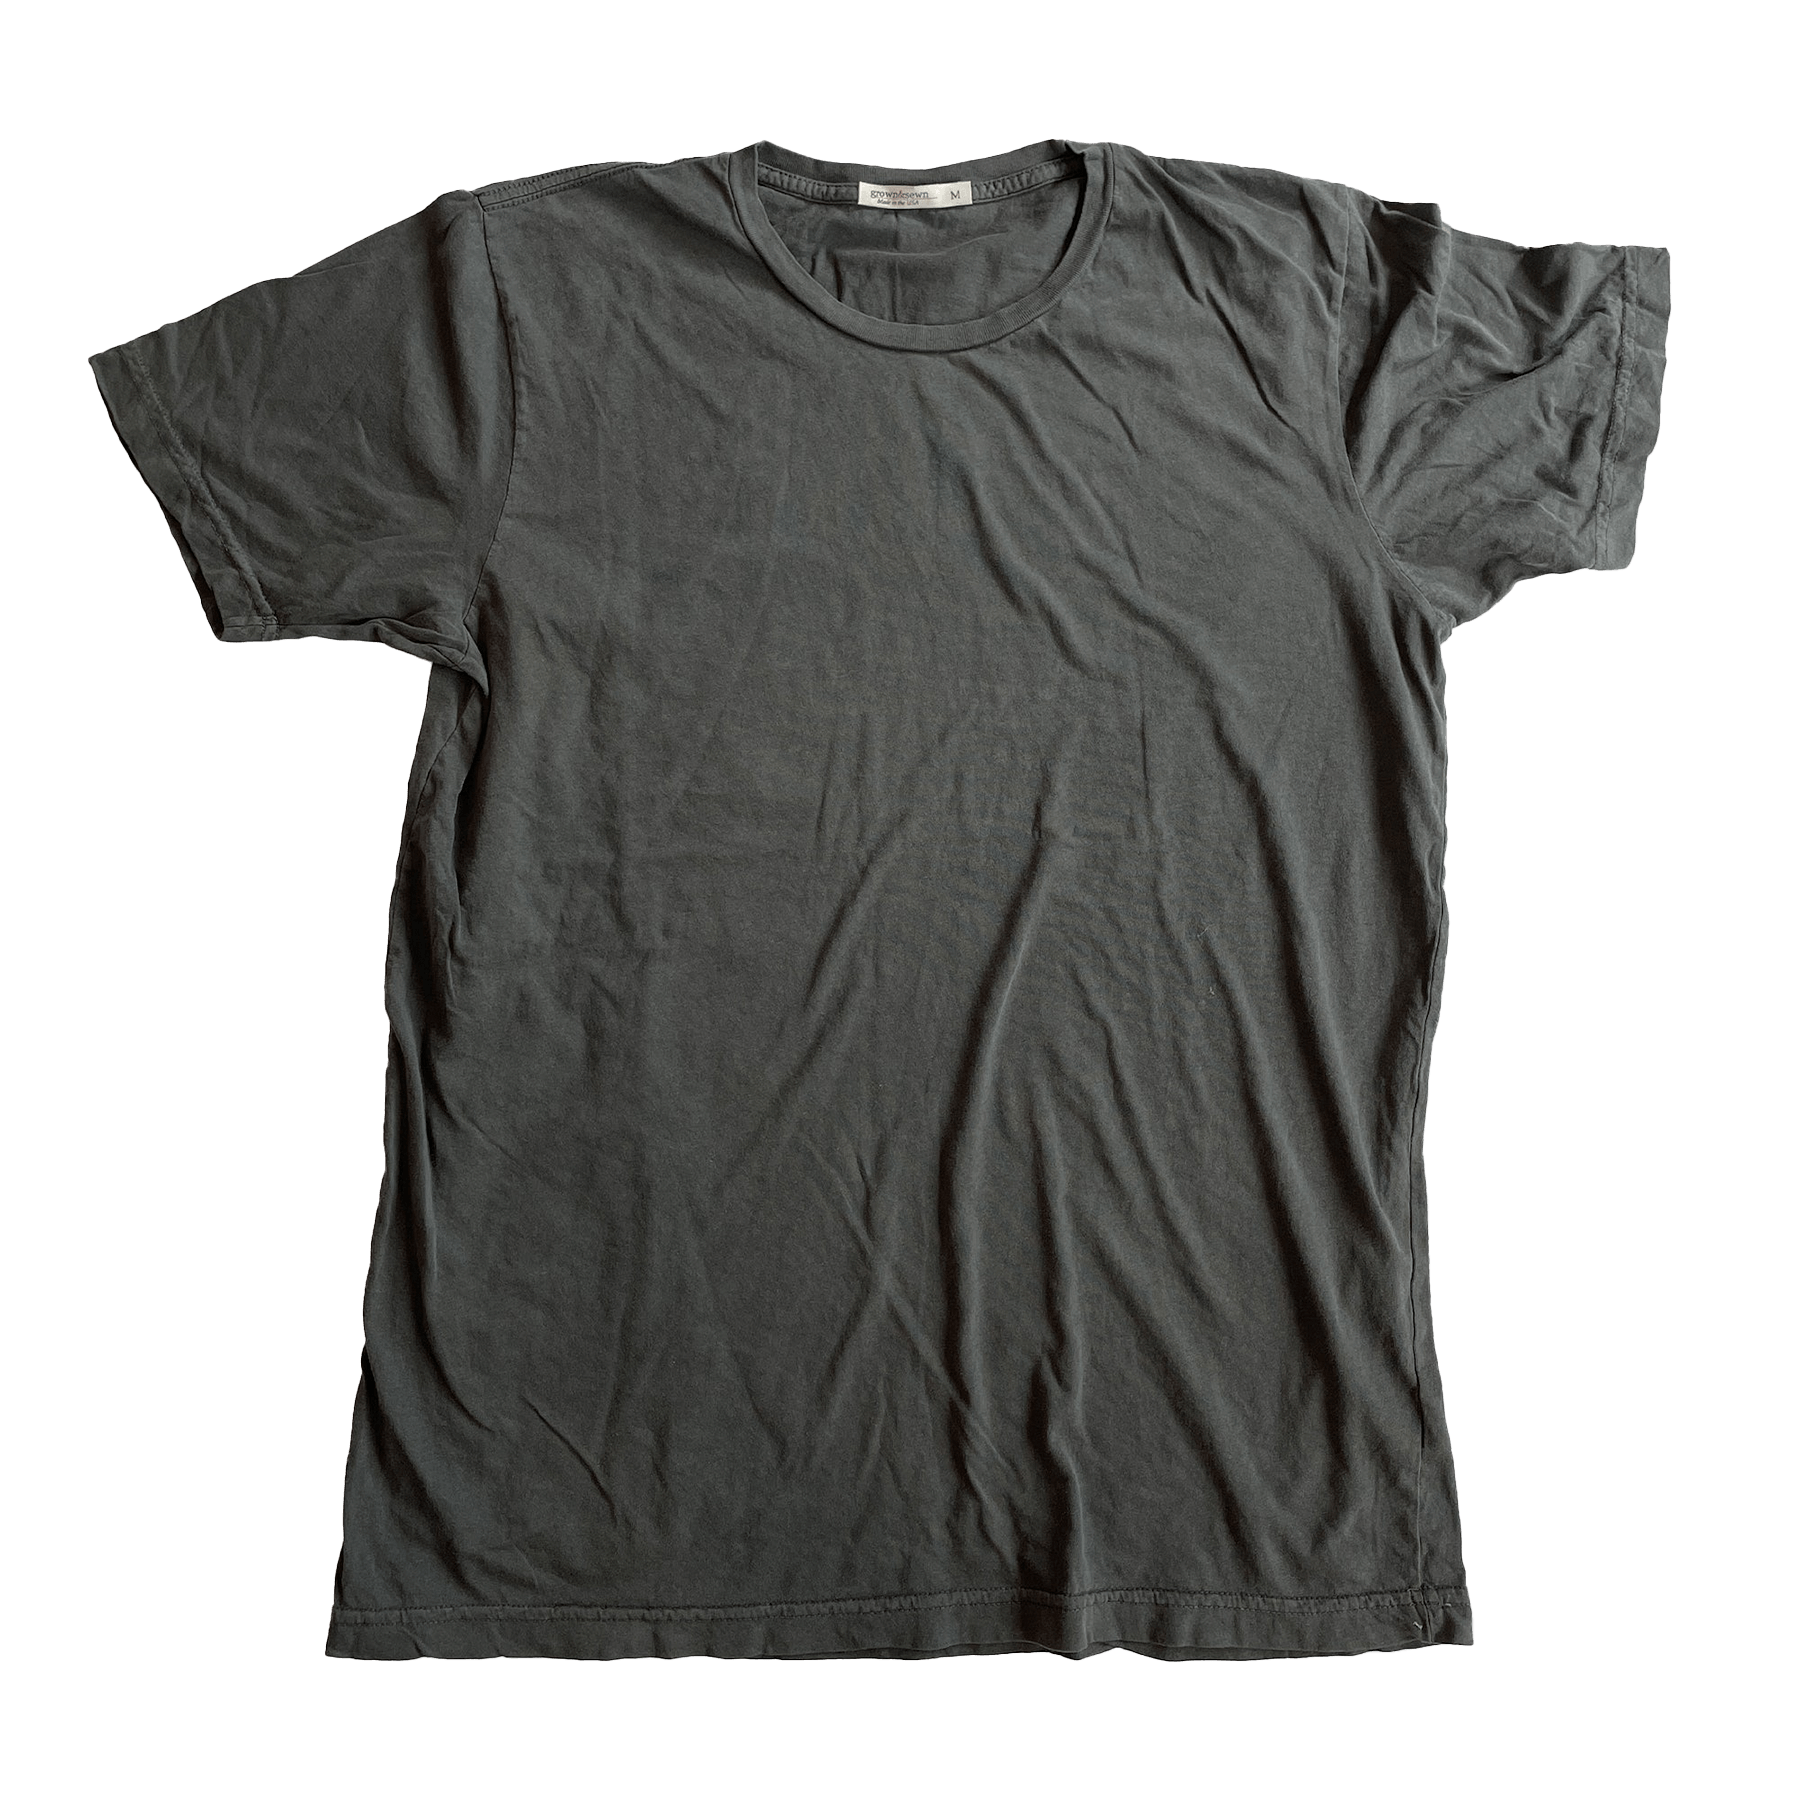 USA Crew Neck T-Shirt - Coal - grown&sewn